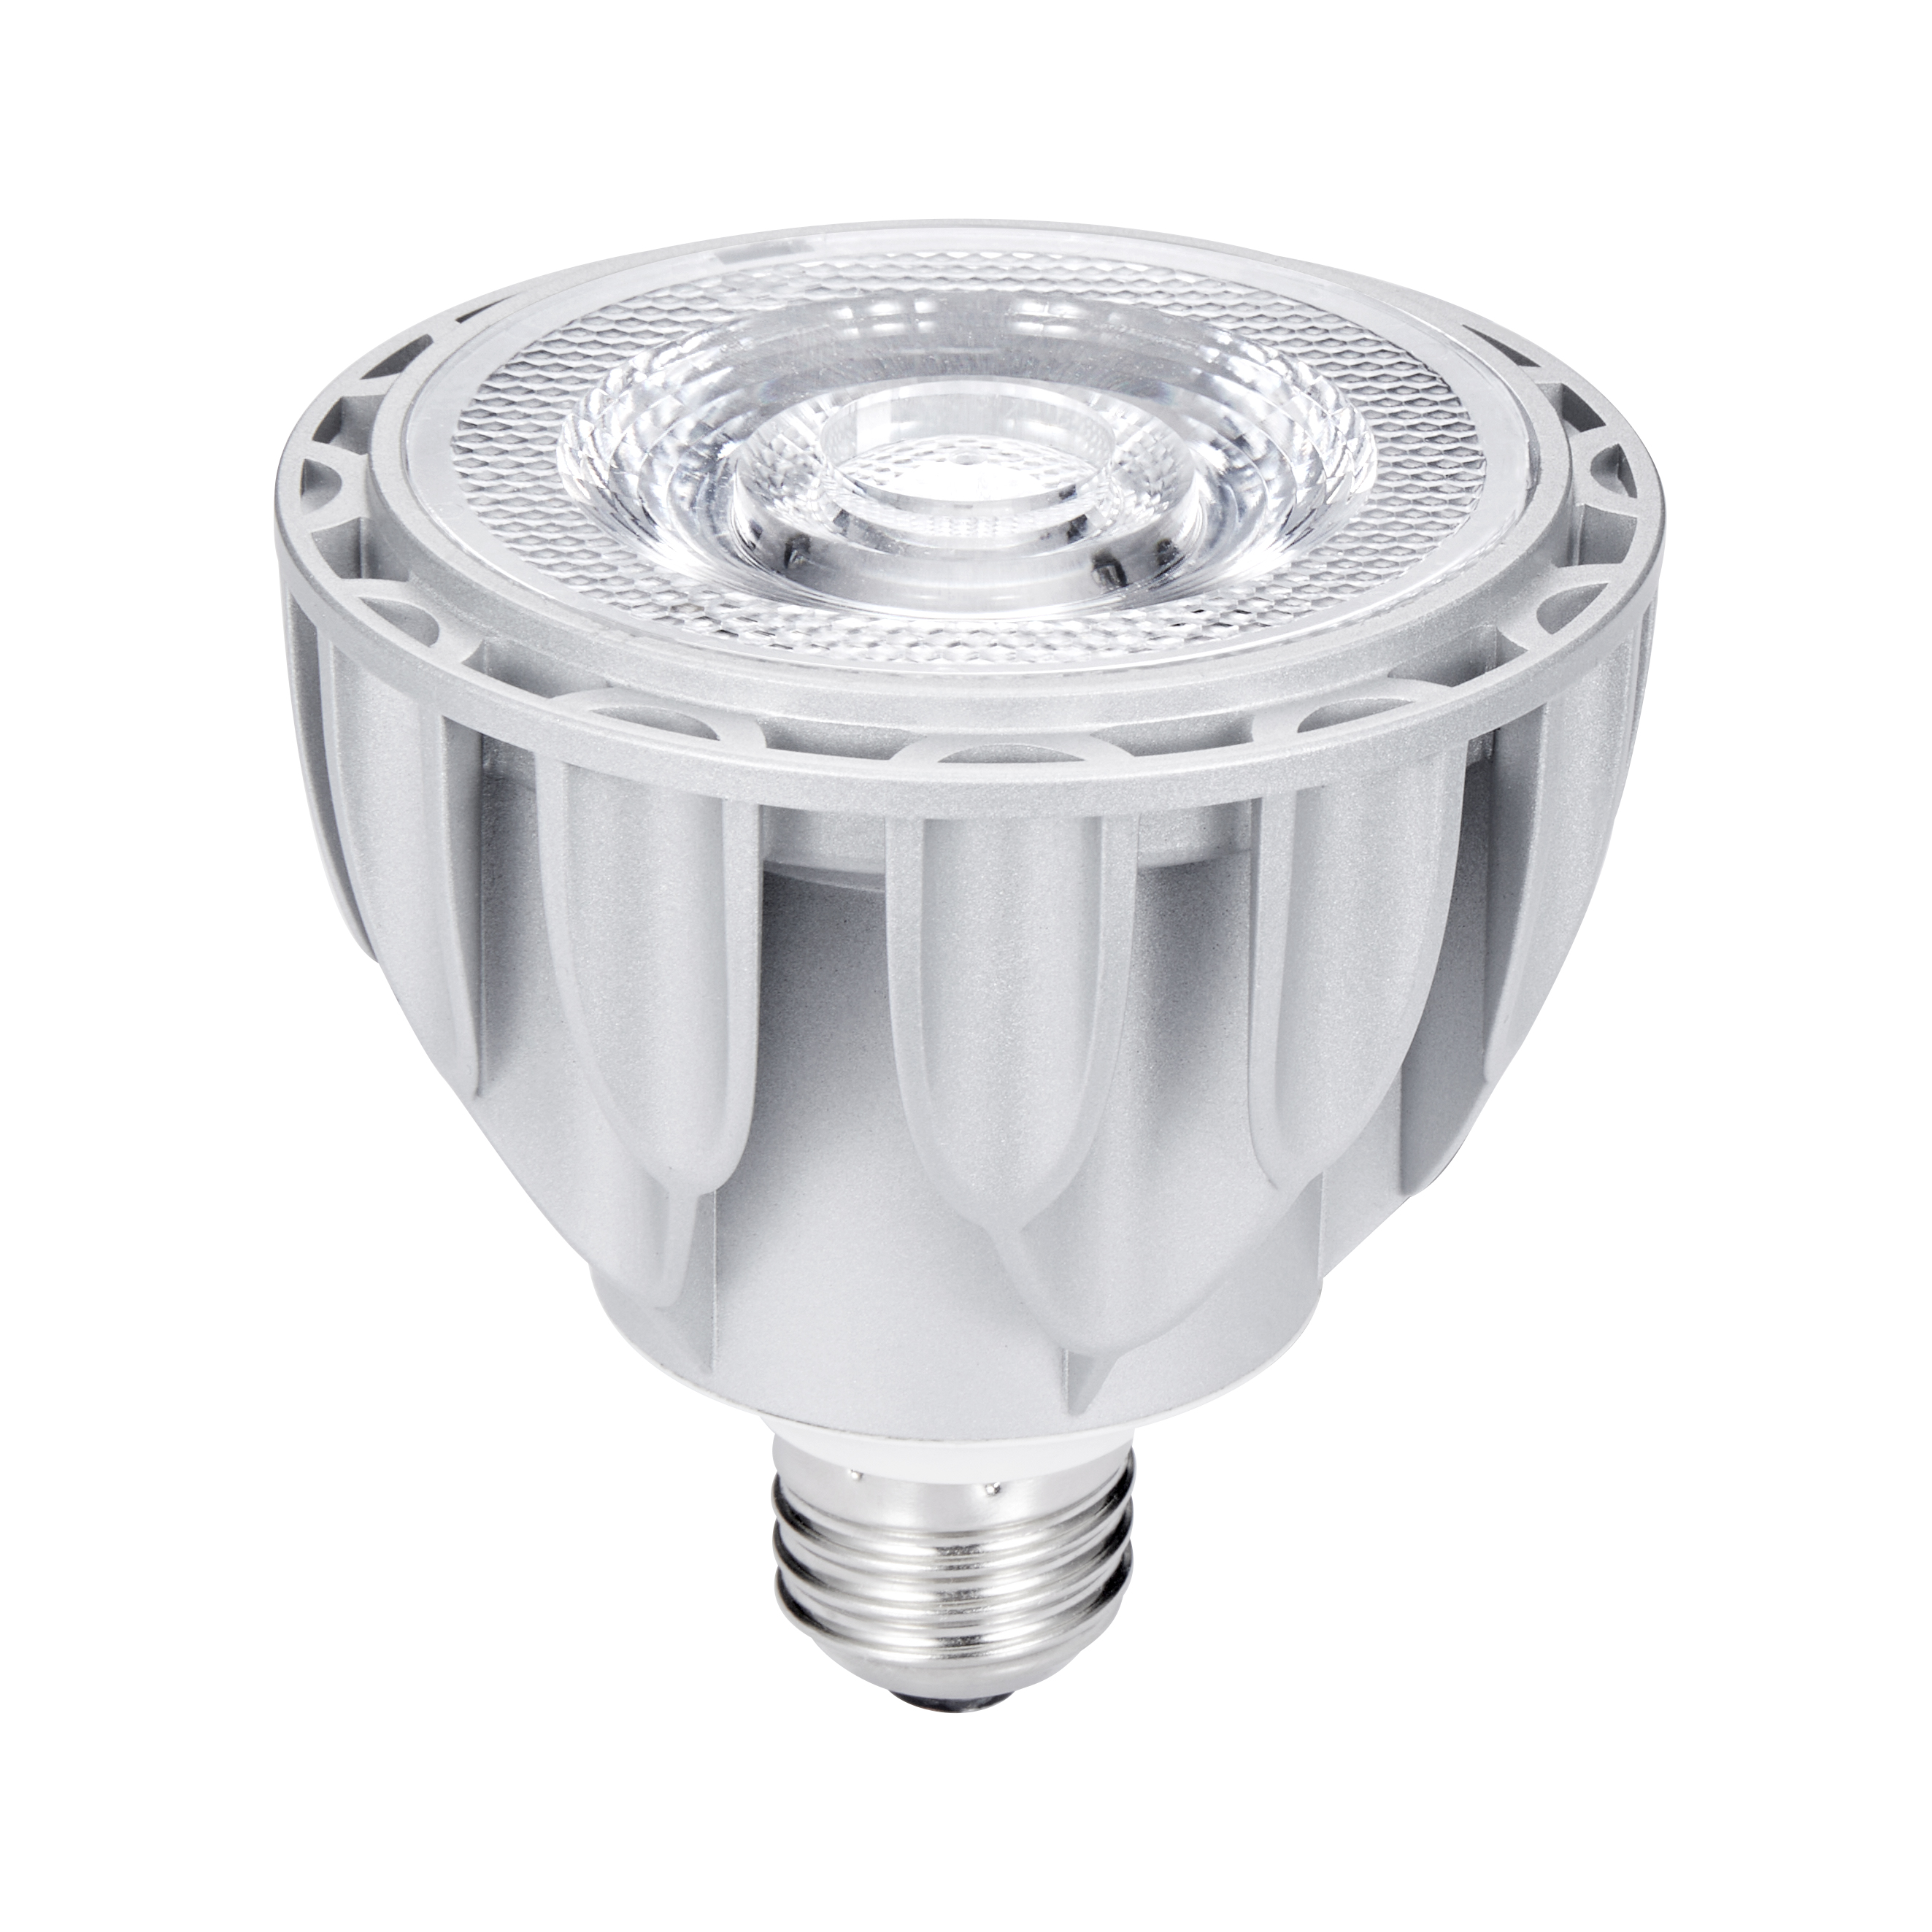 15W 1500LM PAR30 LED Light Bulb with cETLus certification